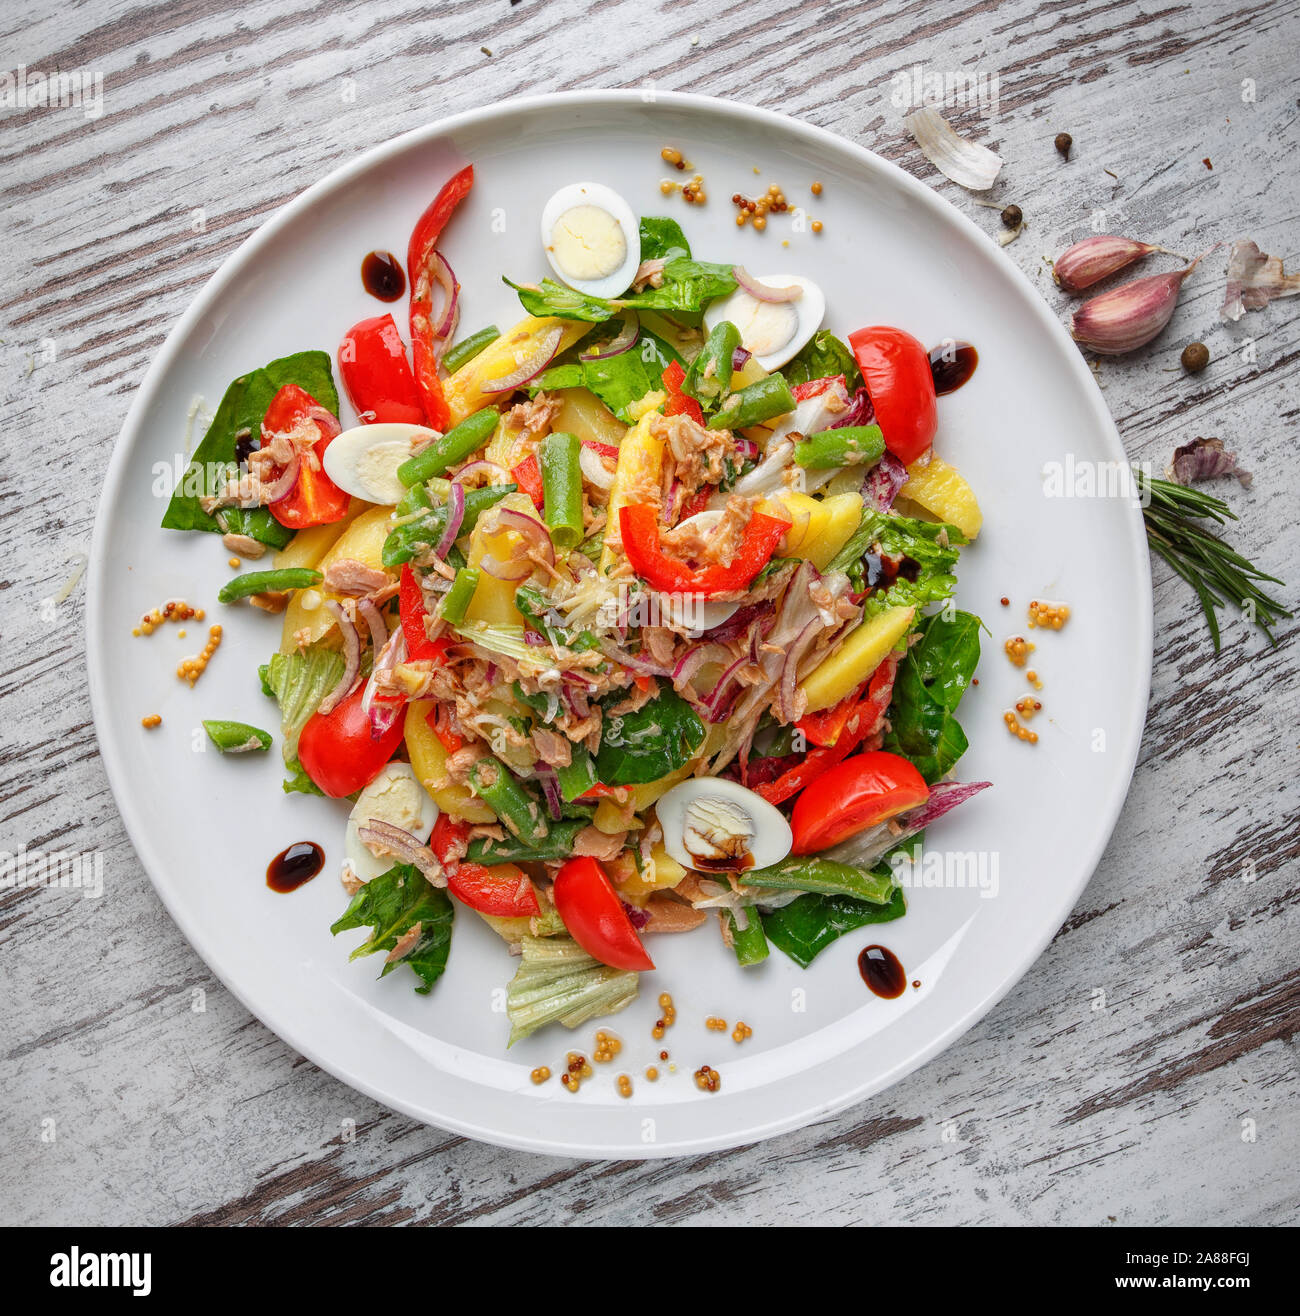 Salade d'œufs de caille, haricots dans les gousses, tomates, oignons et autres ingrédients Banque D'Images